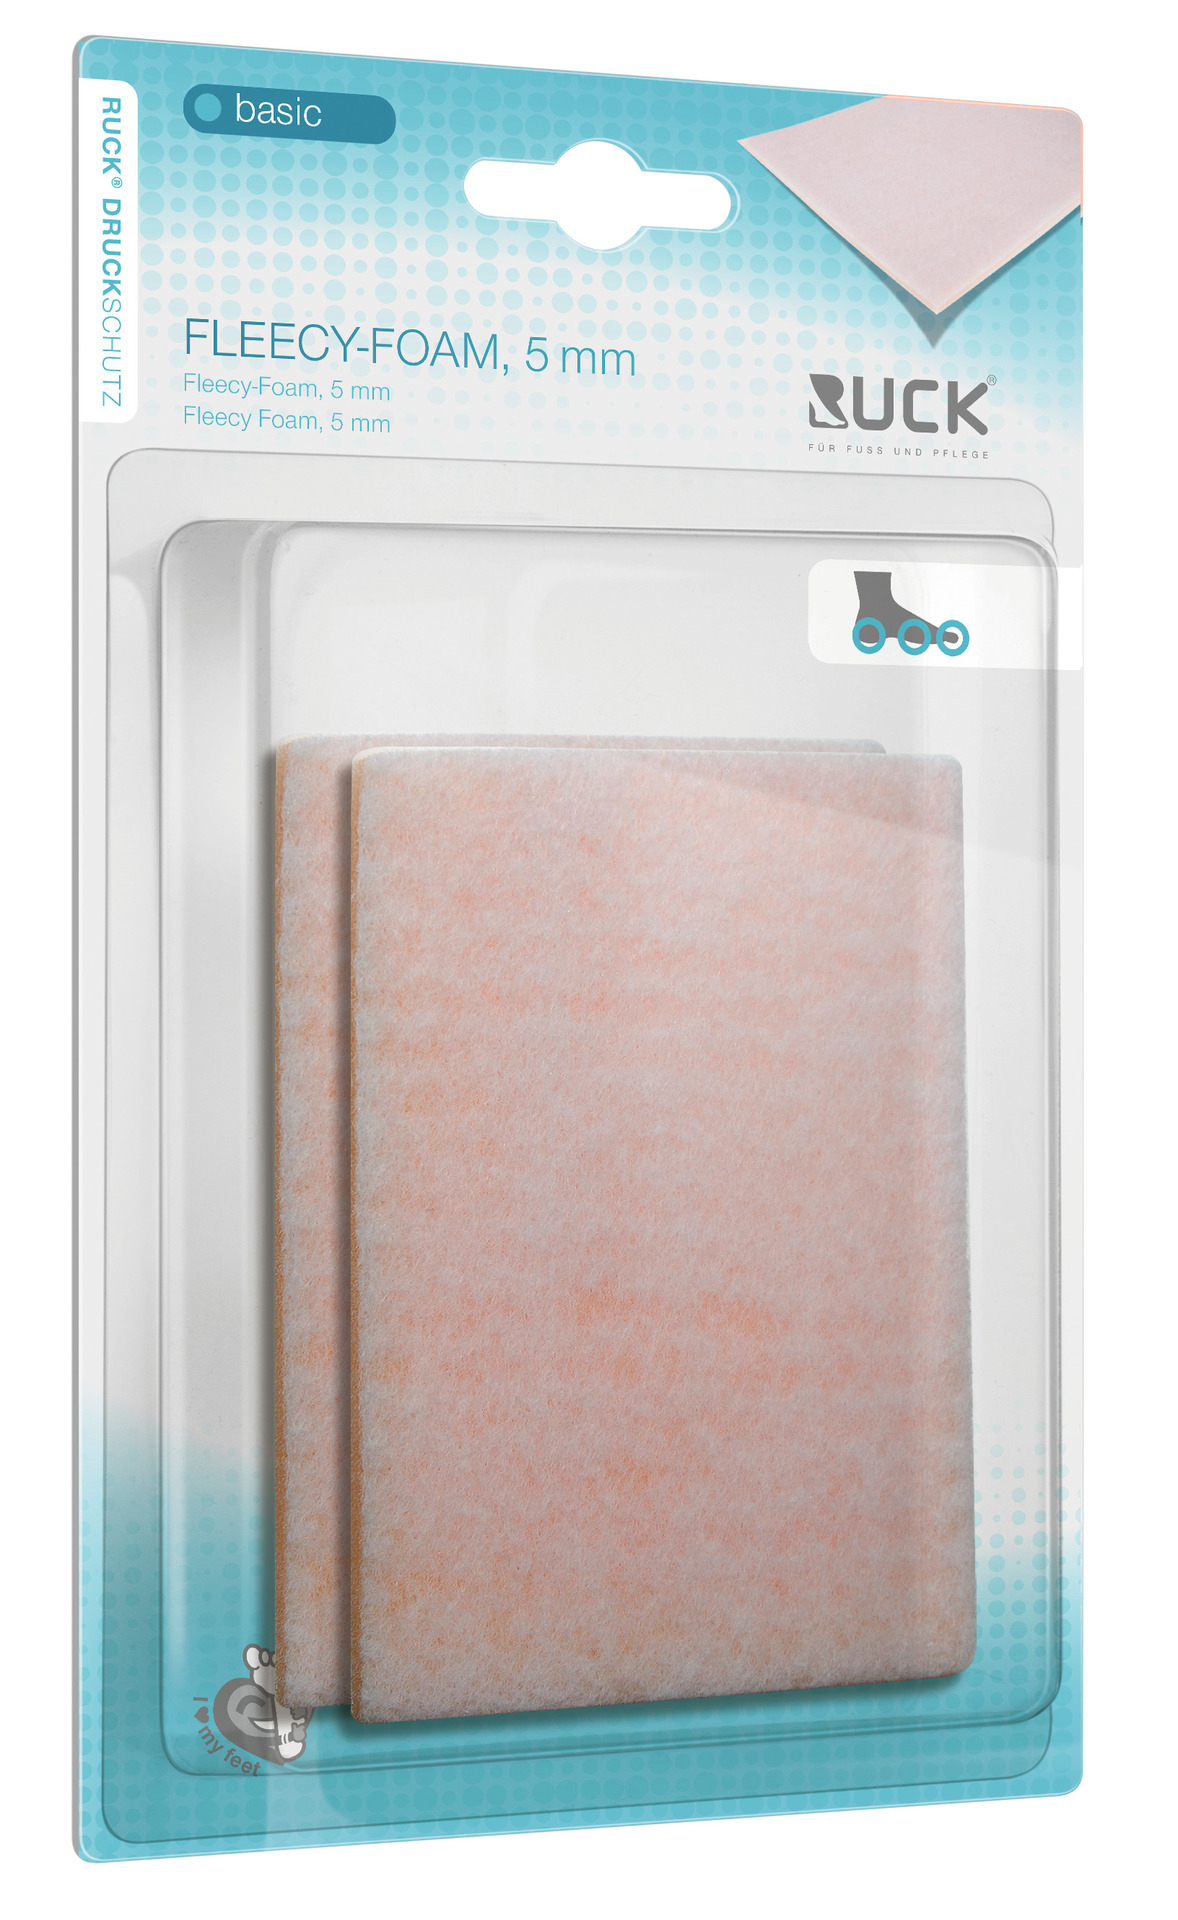 RUCK DRUCKSCHUTZ basic Fleecy-Foam 5 mm 7,5 x 11,6 cm | 2er Pack (Staffelpreis)